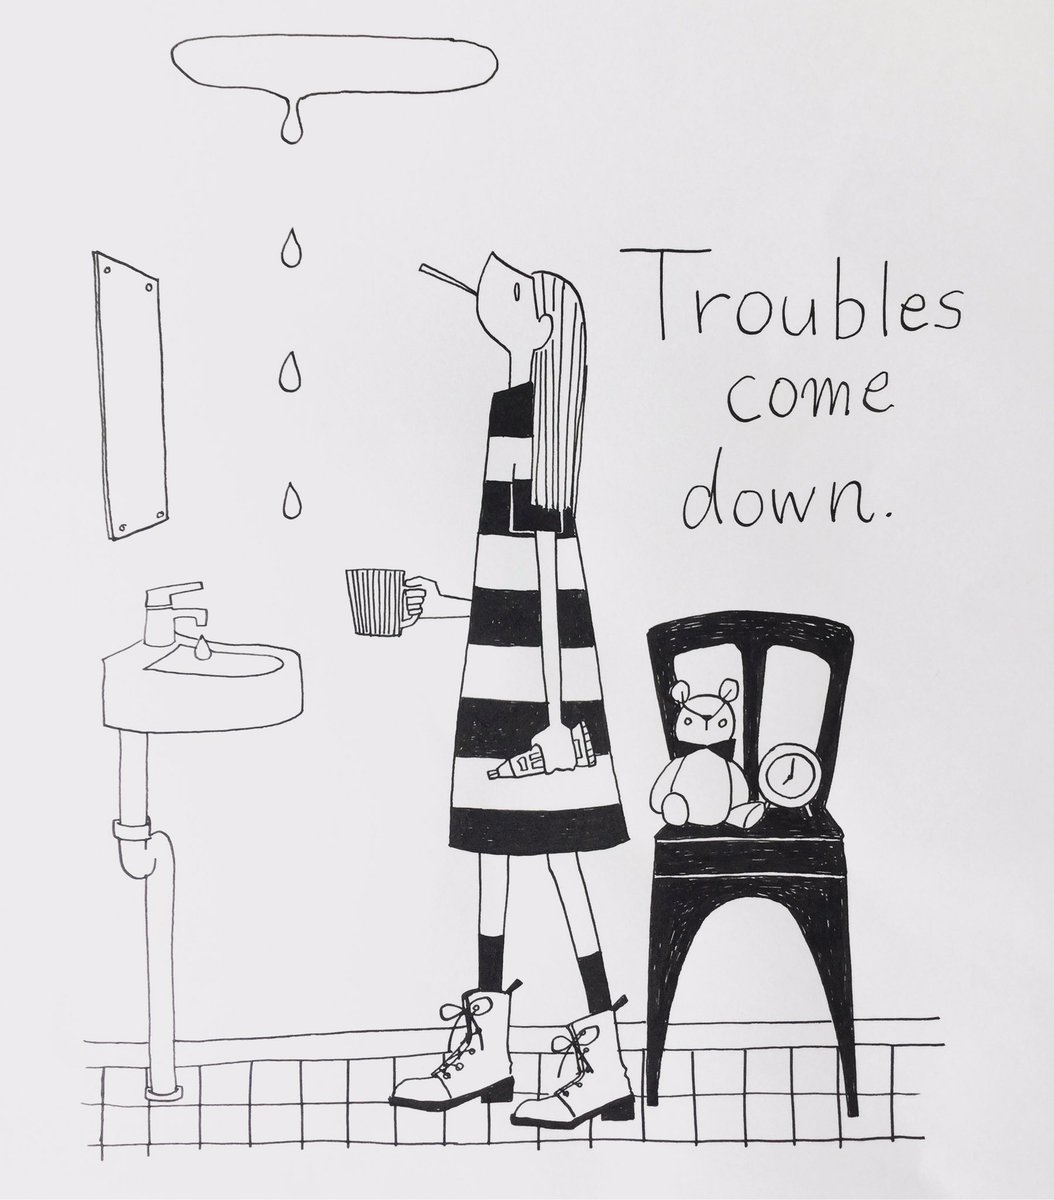 Coco Troubles Come Down イラスト イラスト好きな人と繋がりたい イラストレーション お絵かき お絵描き好きさんと繋がりたい いらすと ペン画 Illustration Illust Art Artwork Draw Drawing 線画 線画イラスト T Co Po2u7nac7h